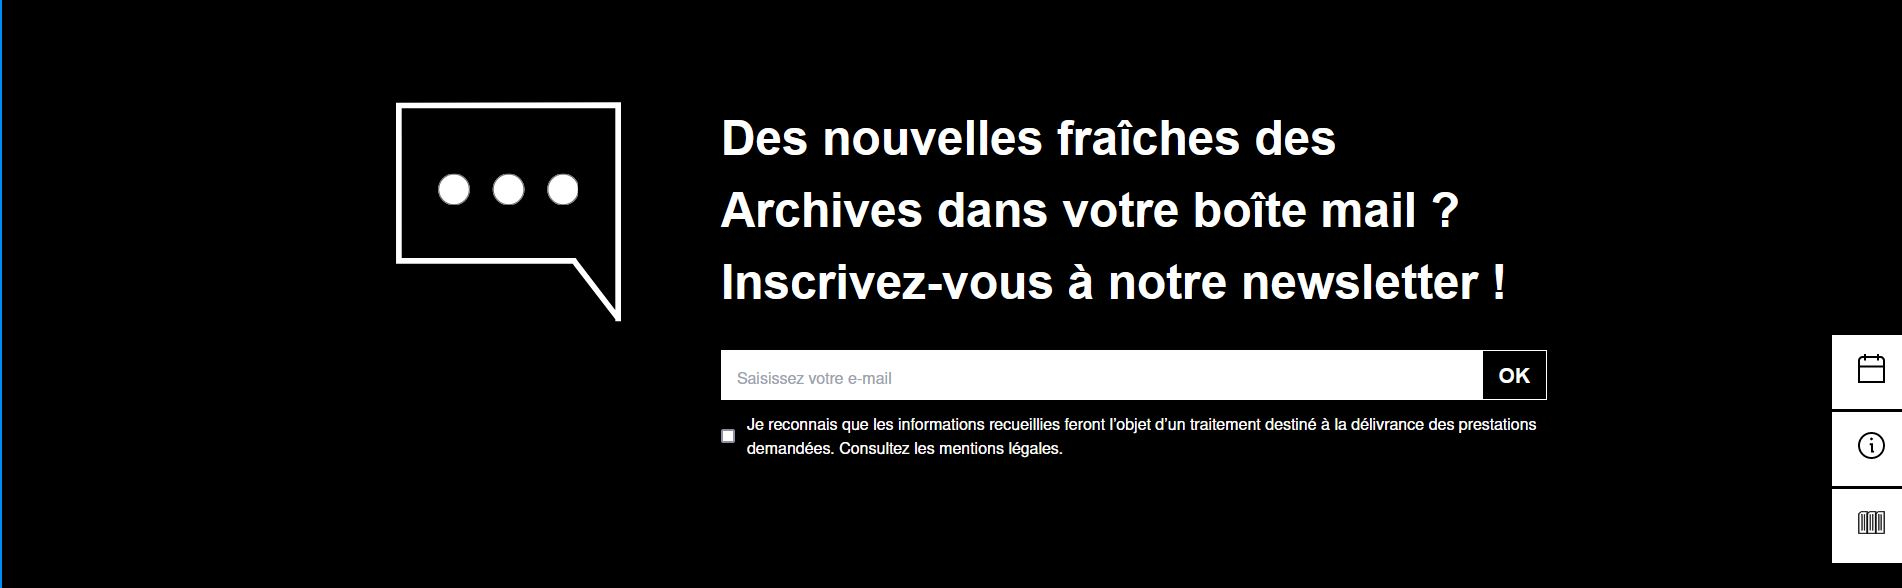 Vue de l'onglet "Inscrivez-vous" sur le nouveau site des Archives de Montpellier